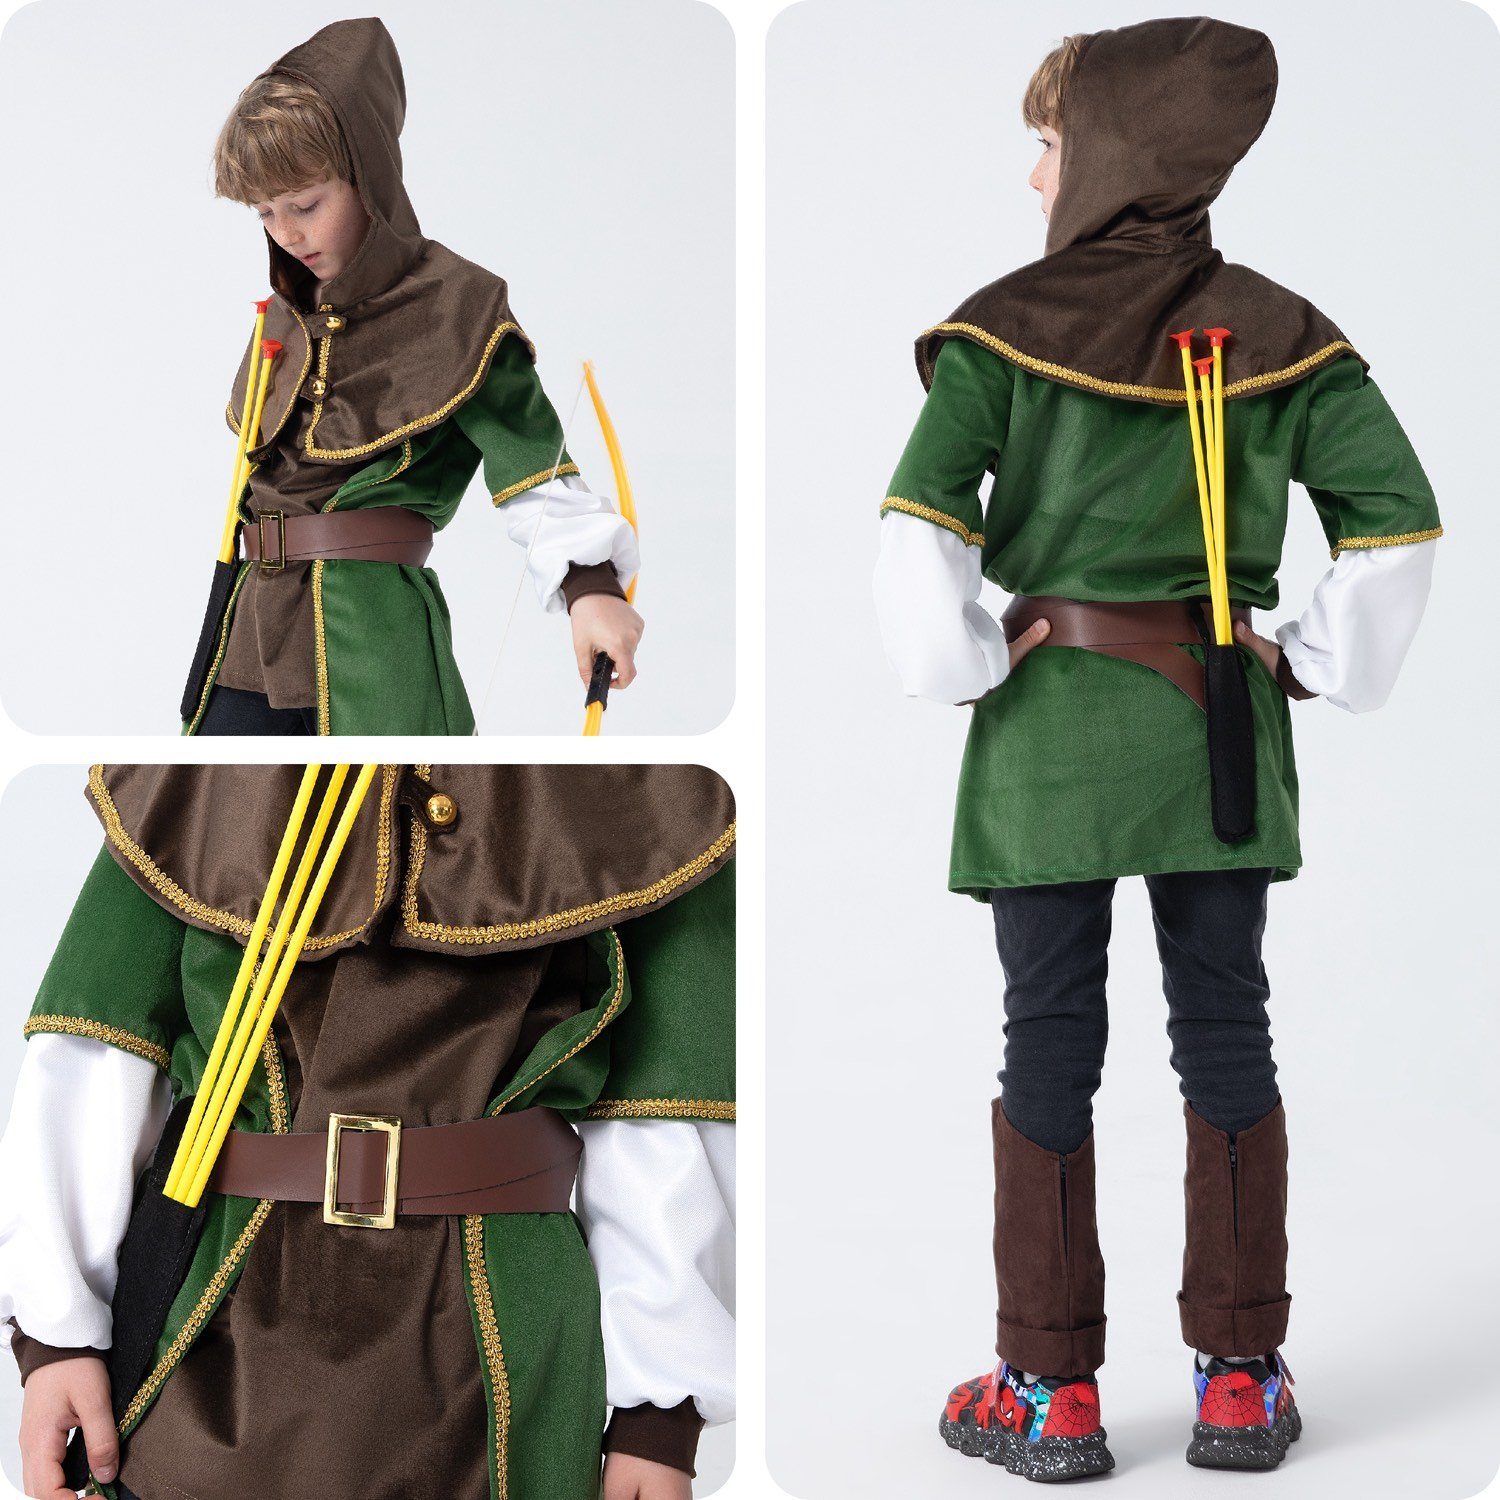 Corimori Ritter-Kostüm »Robin Hood Karnevalskostüm Set, Kinder,  braun/grün«, Kostüm, Fasching, Mittelalterfest, Jungen, mit Pfeil und Bogen  online kaufen | OTTO